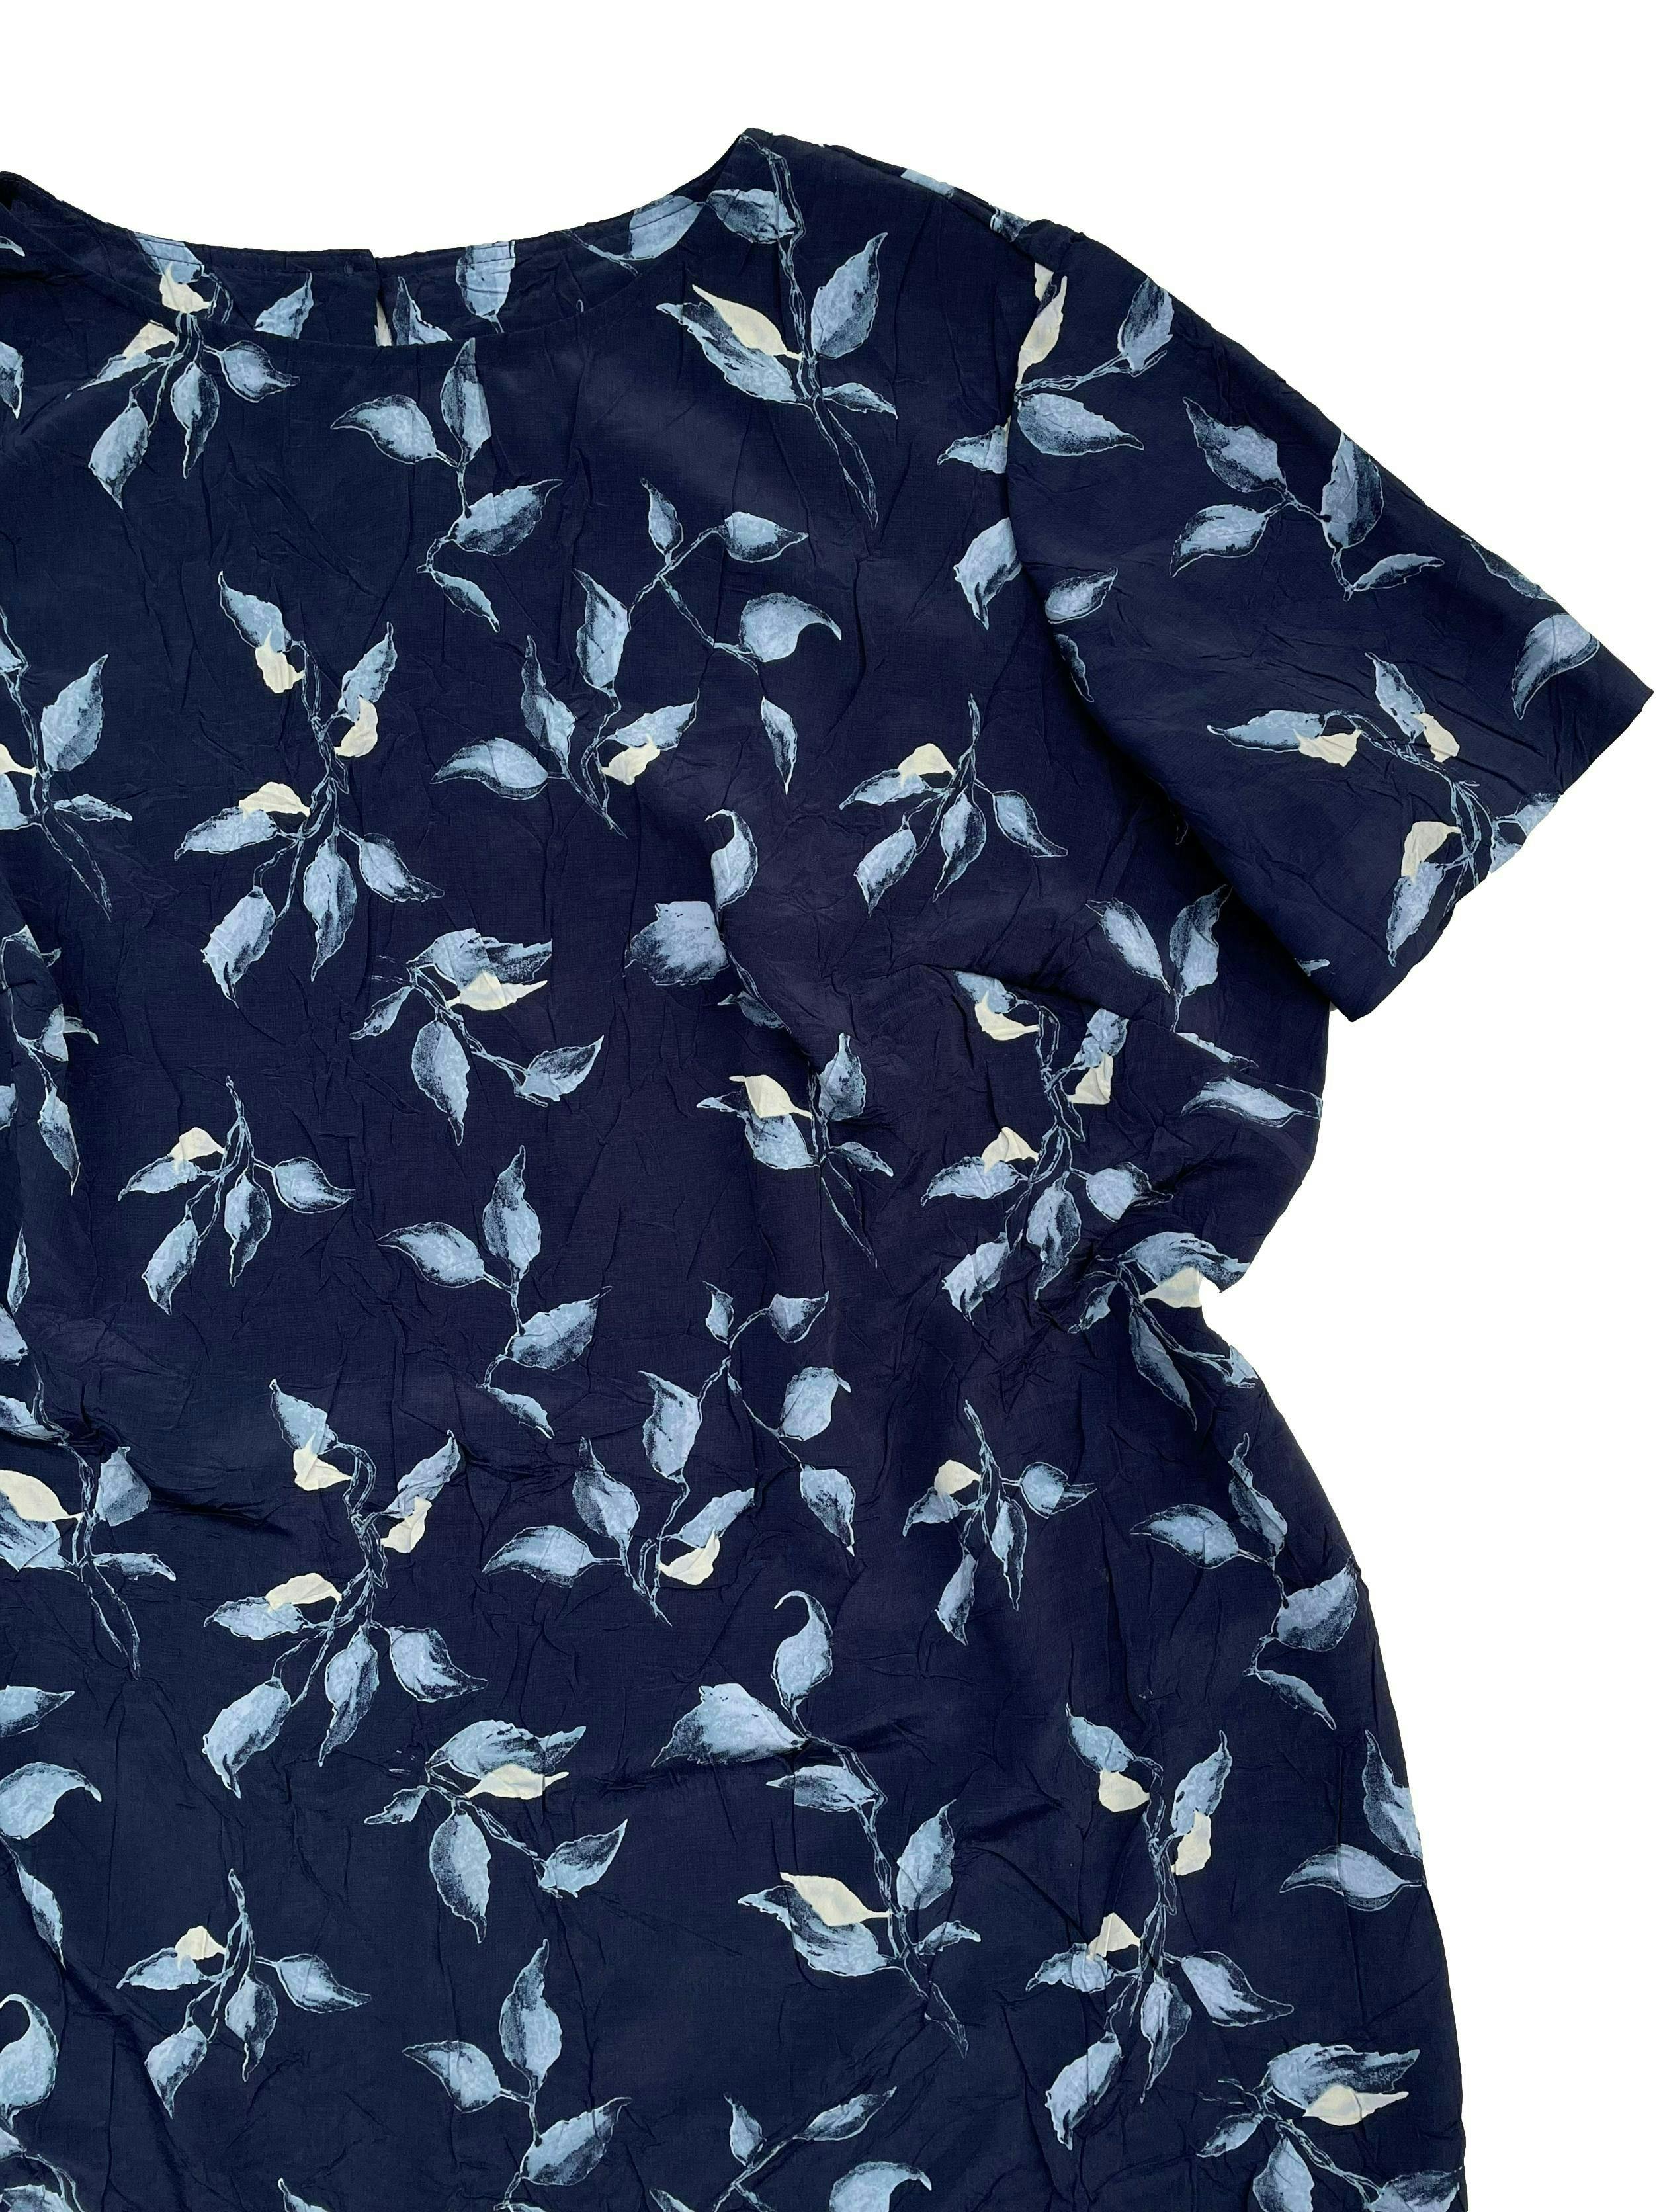 Vestido vintage tela plana azul con textura, flores al tono y crema, pasador para regular la cintura en la espalda, aberturas laterales en la basta. Busto 140cm Largo 130cm